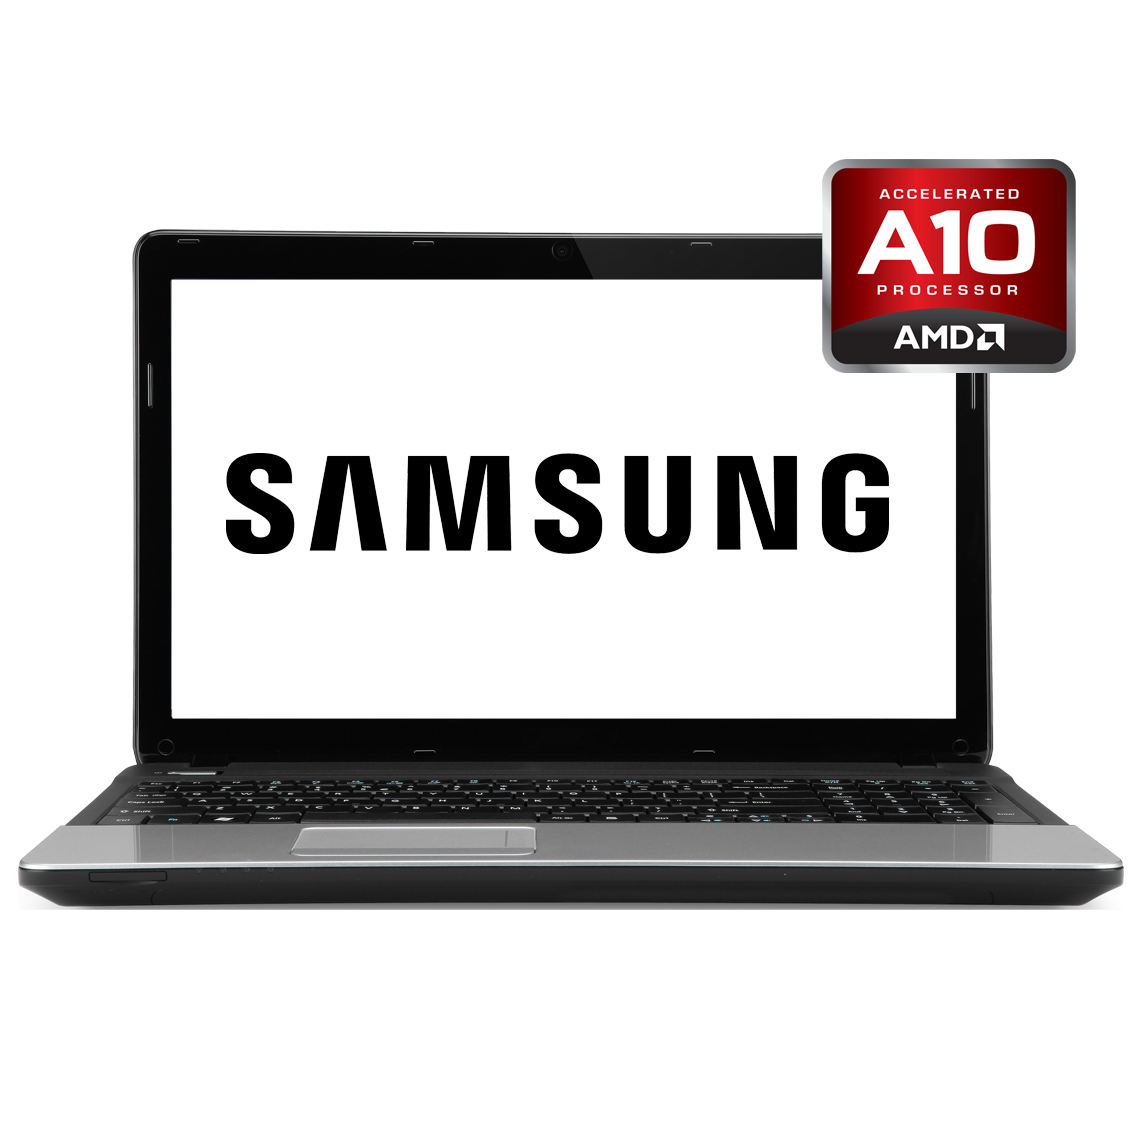 Samsung - 15 inch AMD A10